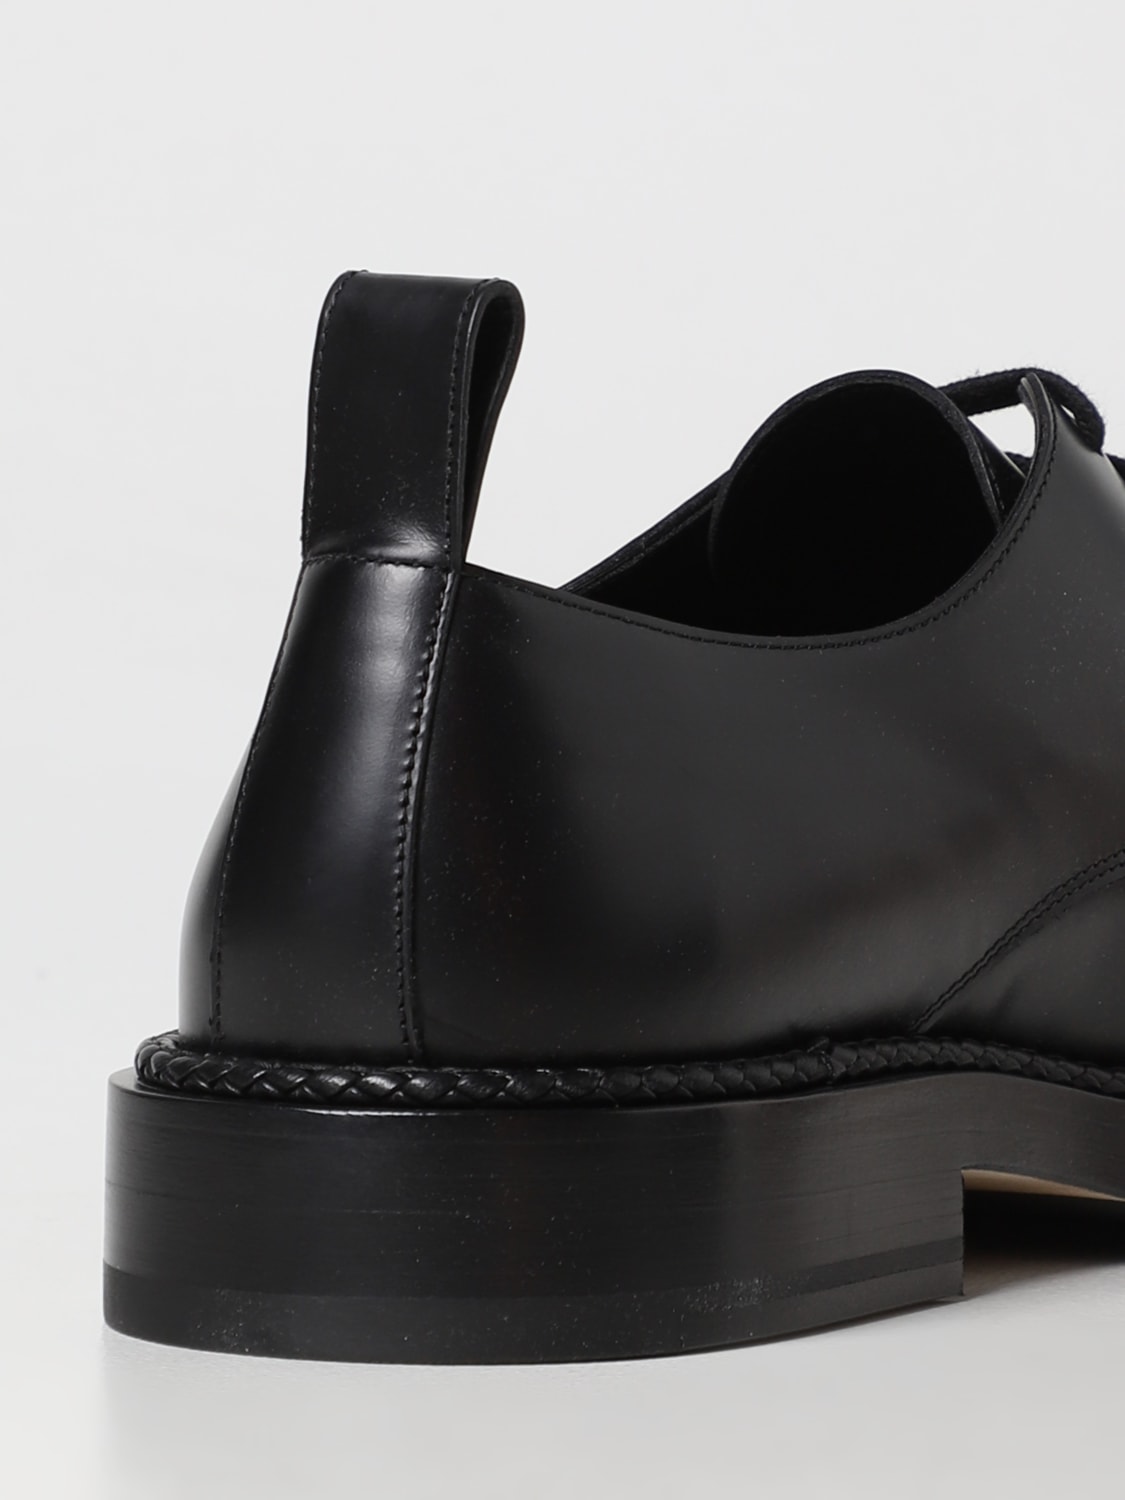 BOTTEGA VENETA: Strut derby shoes in leather - Black | BOTTEGA 